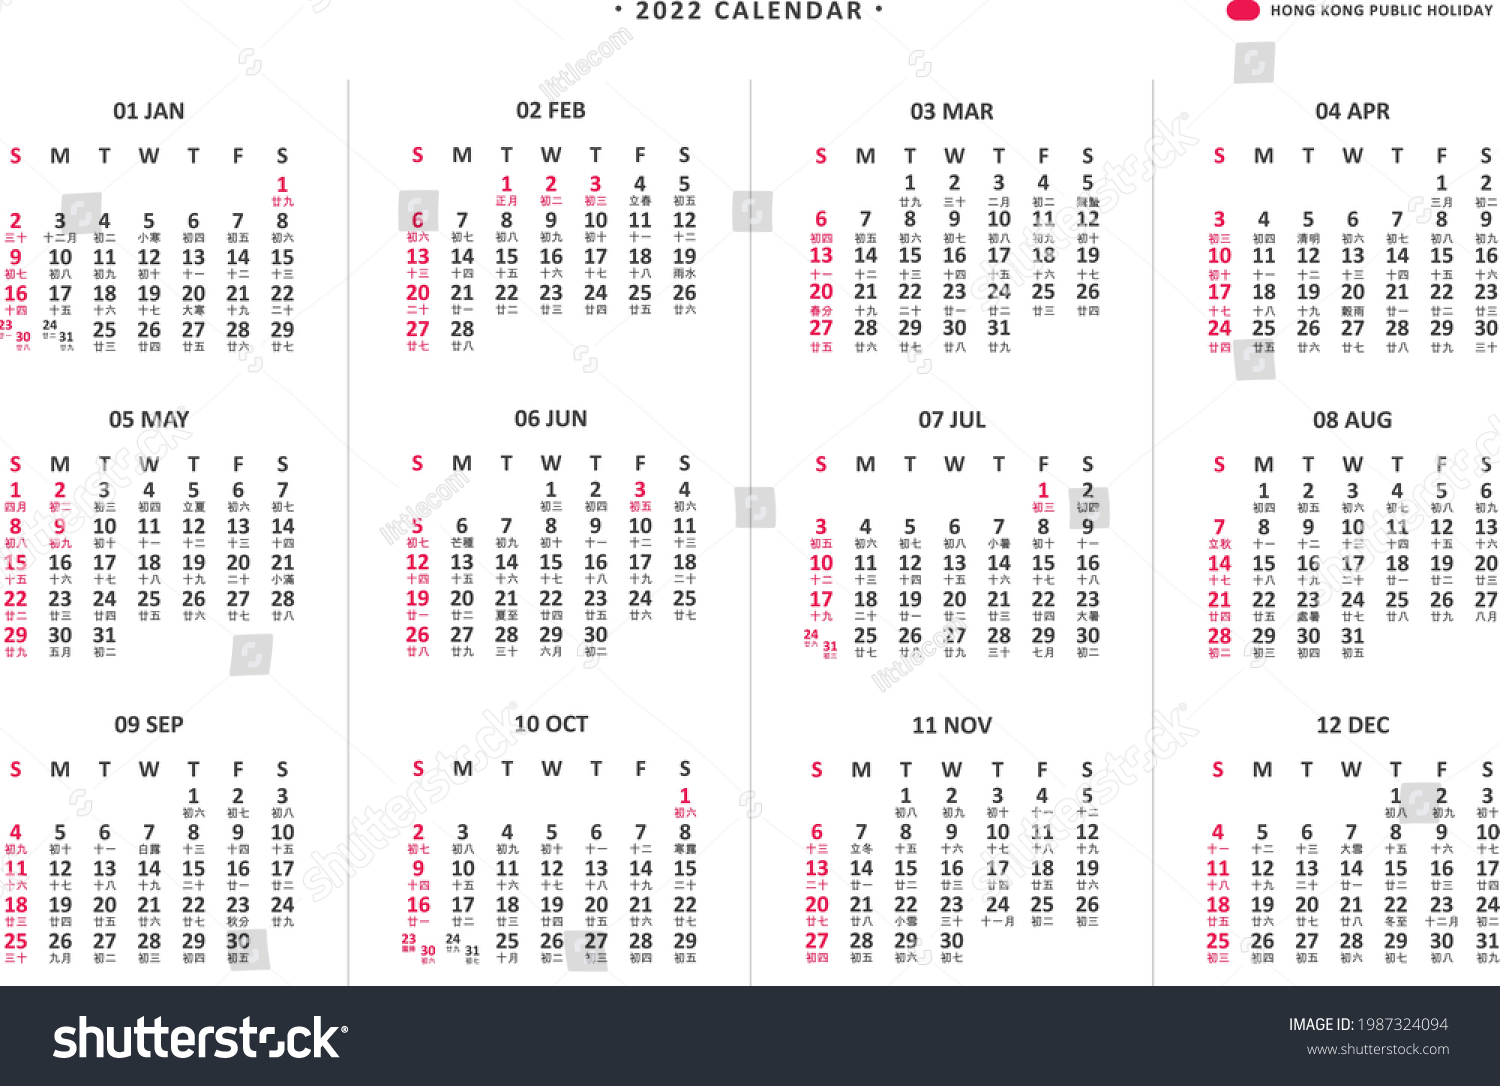 2022 Calendar Hk January Calendar 2022